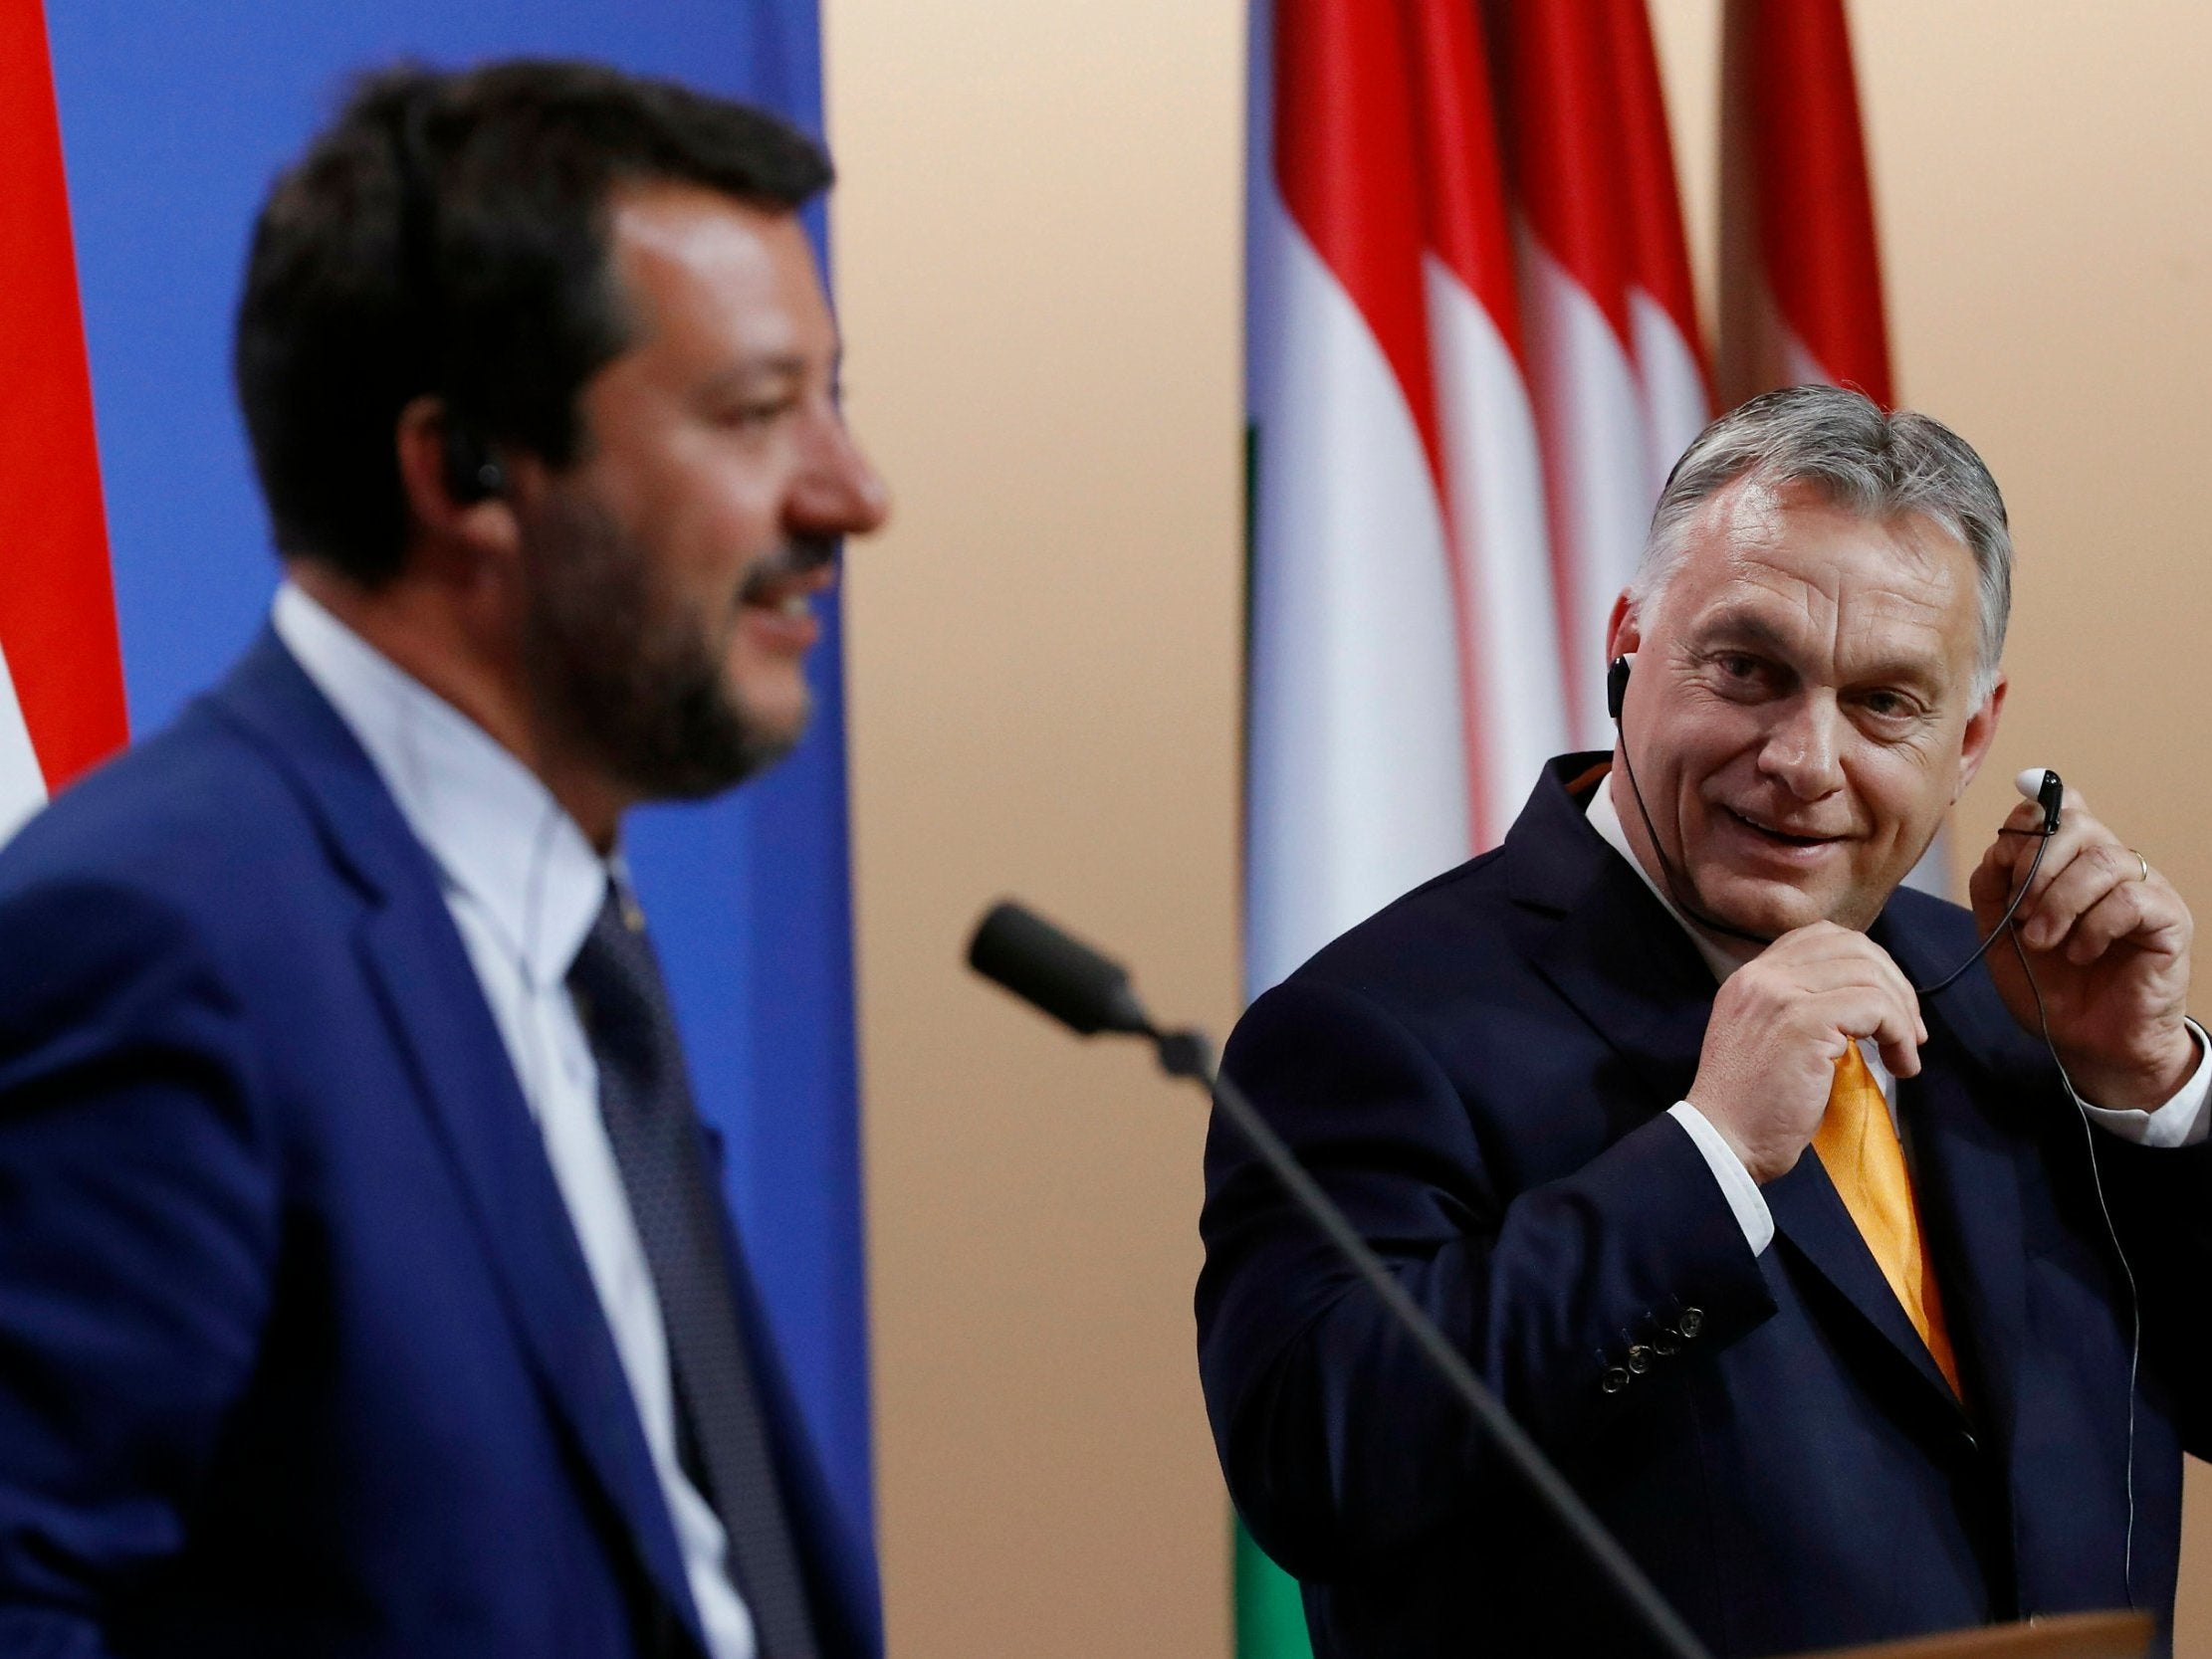 Matteo Salvini and Viktor Orban met in Budapest on Thursday